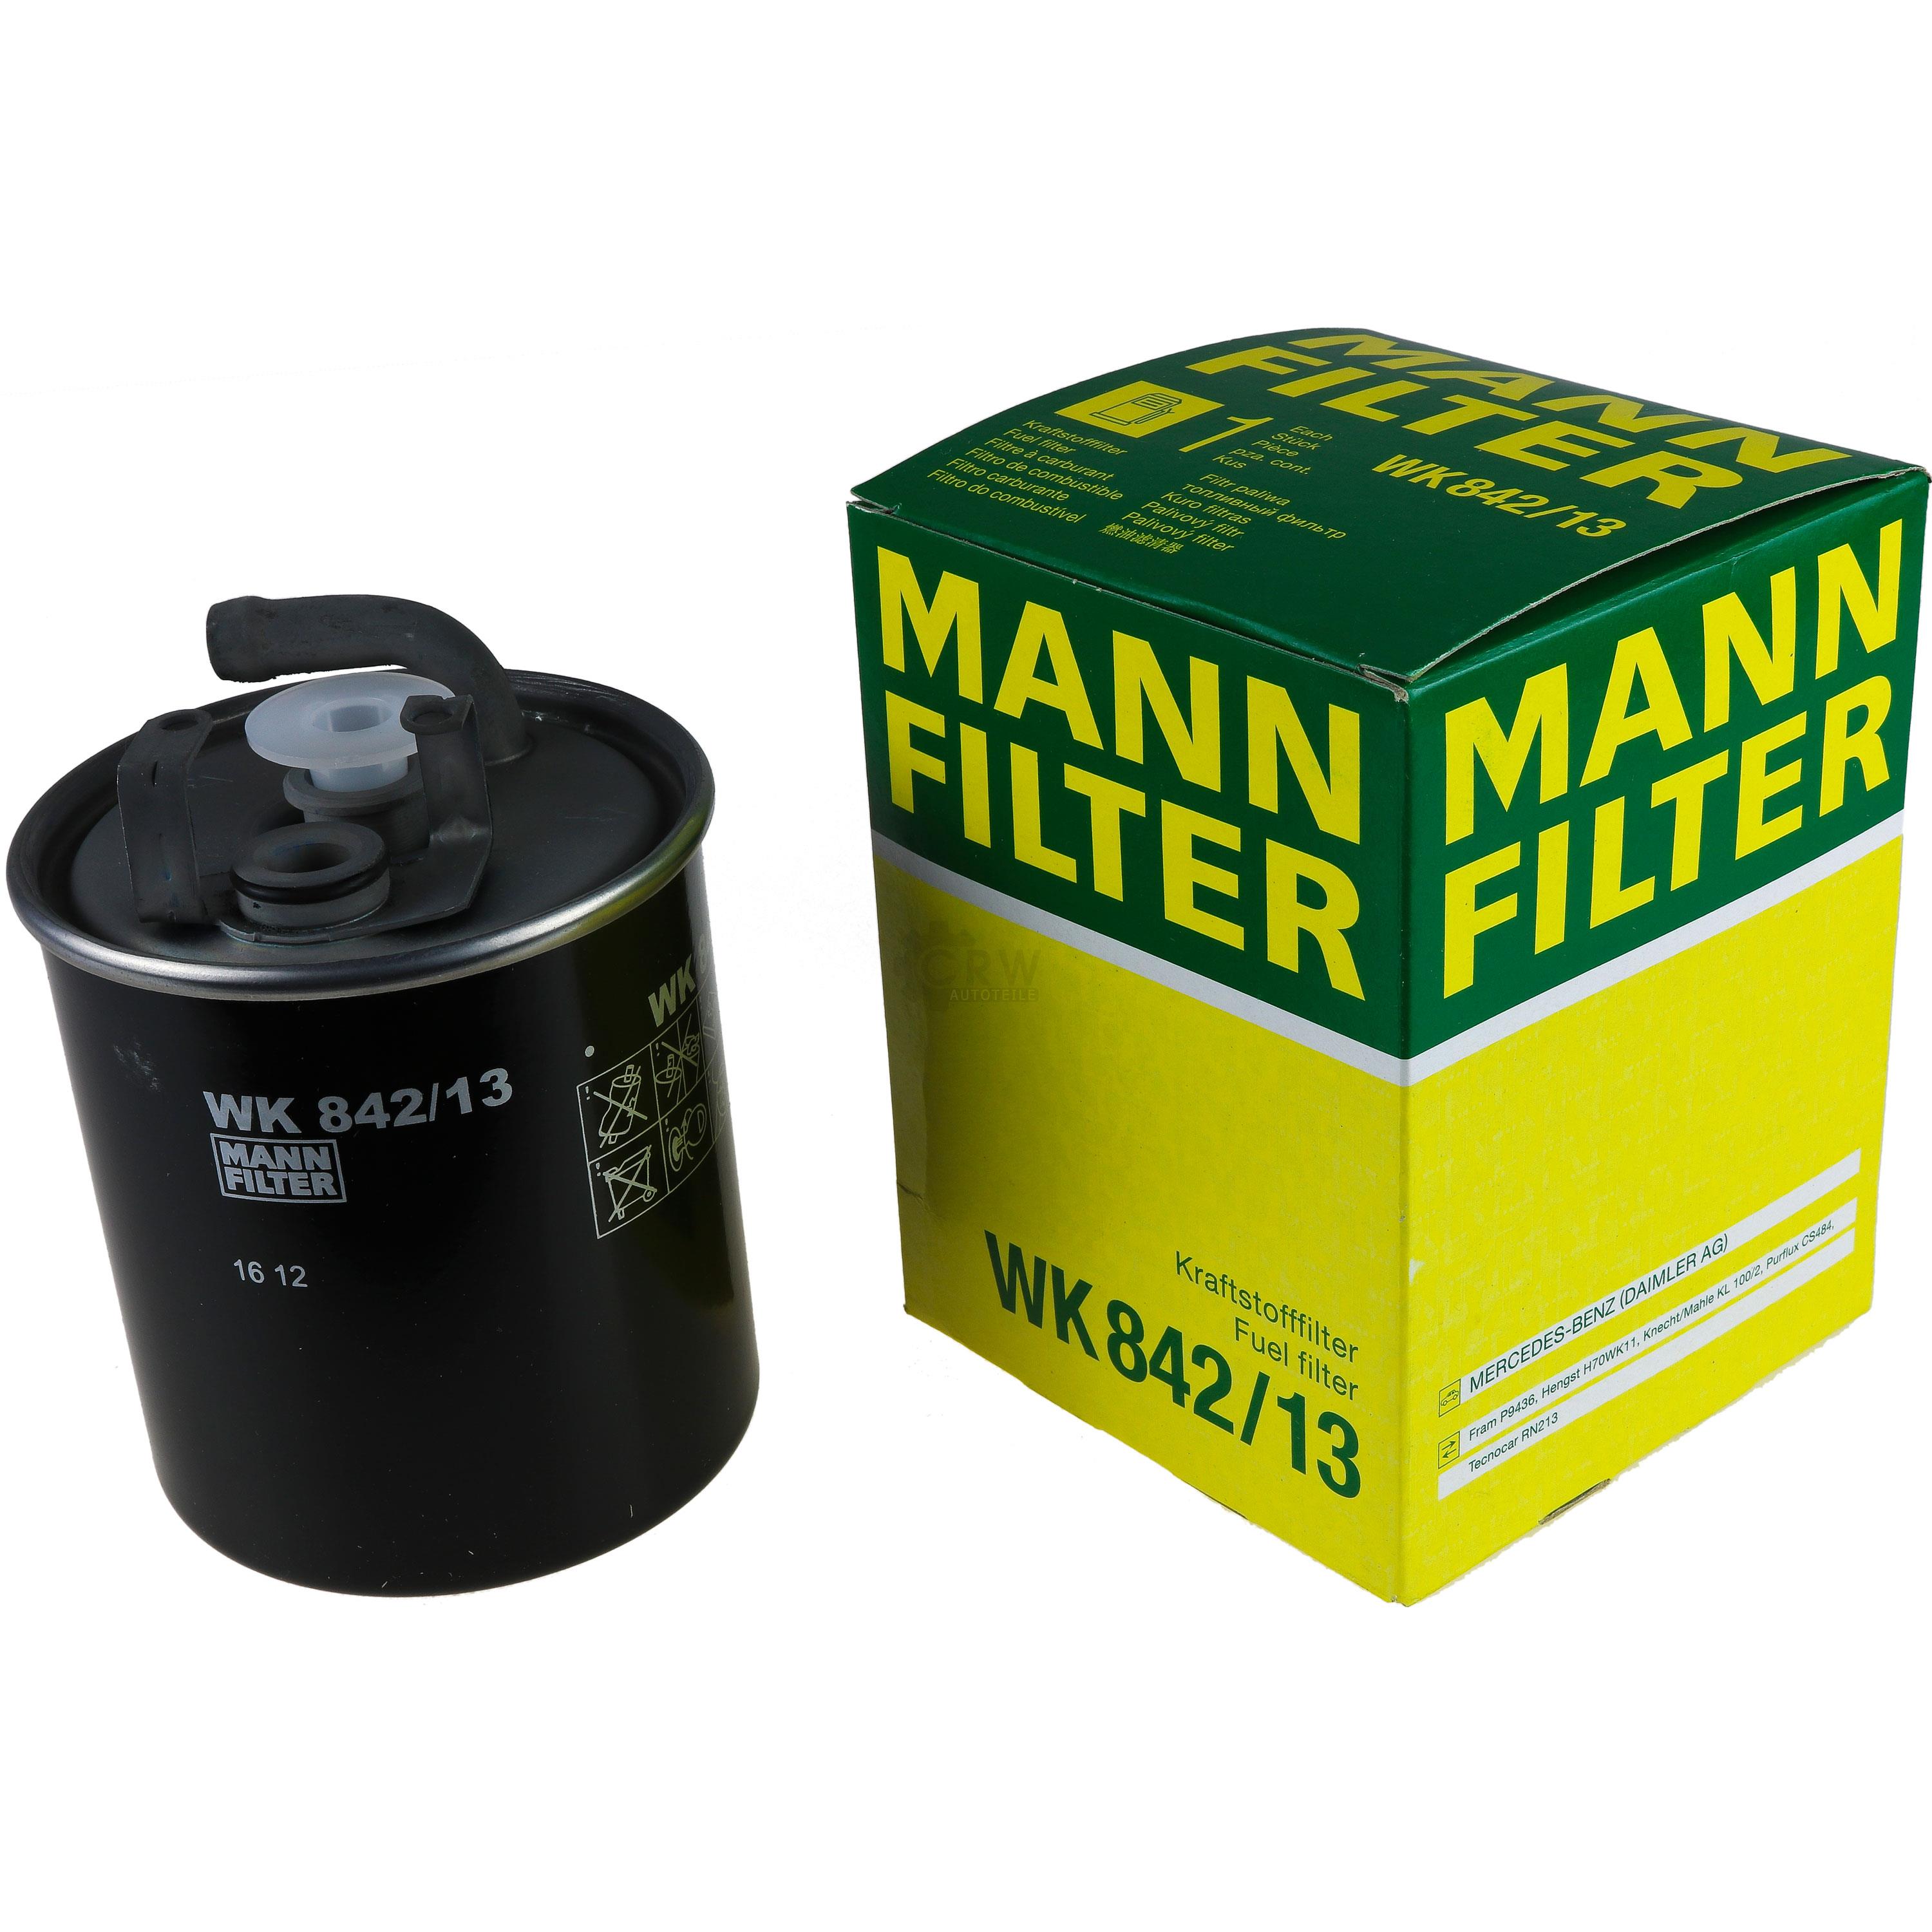 MANN-FILTER Kraftstofffilter WK 842/13 Fuel Filter